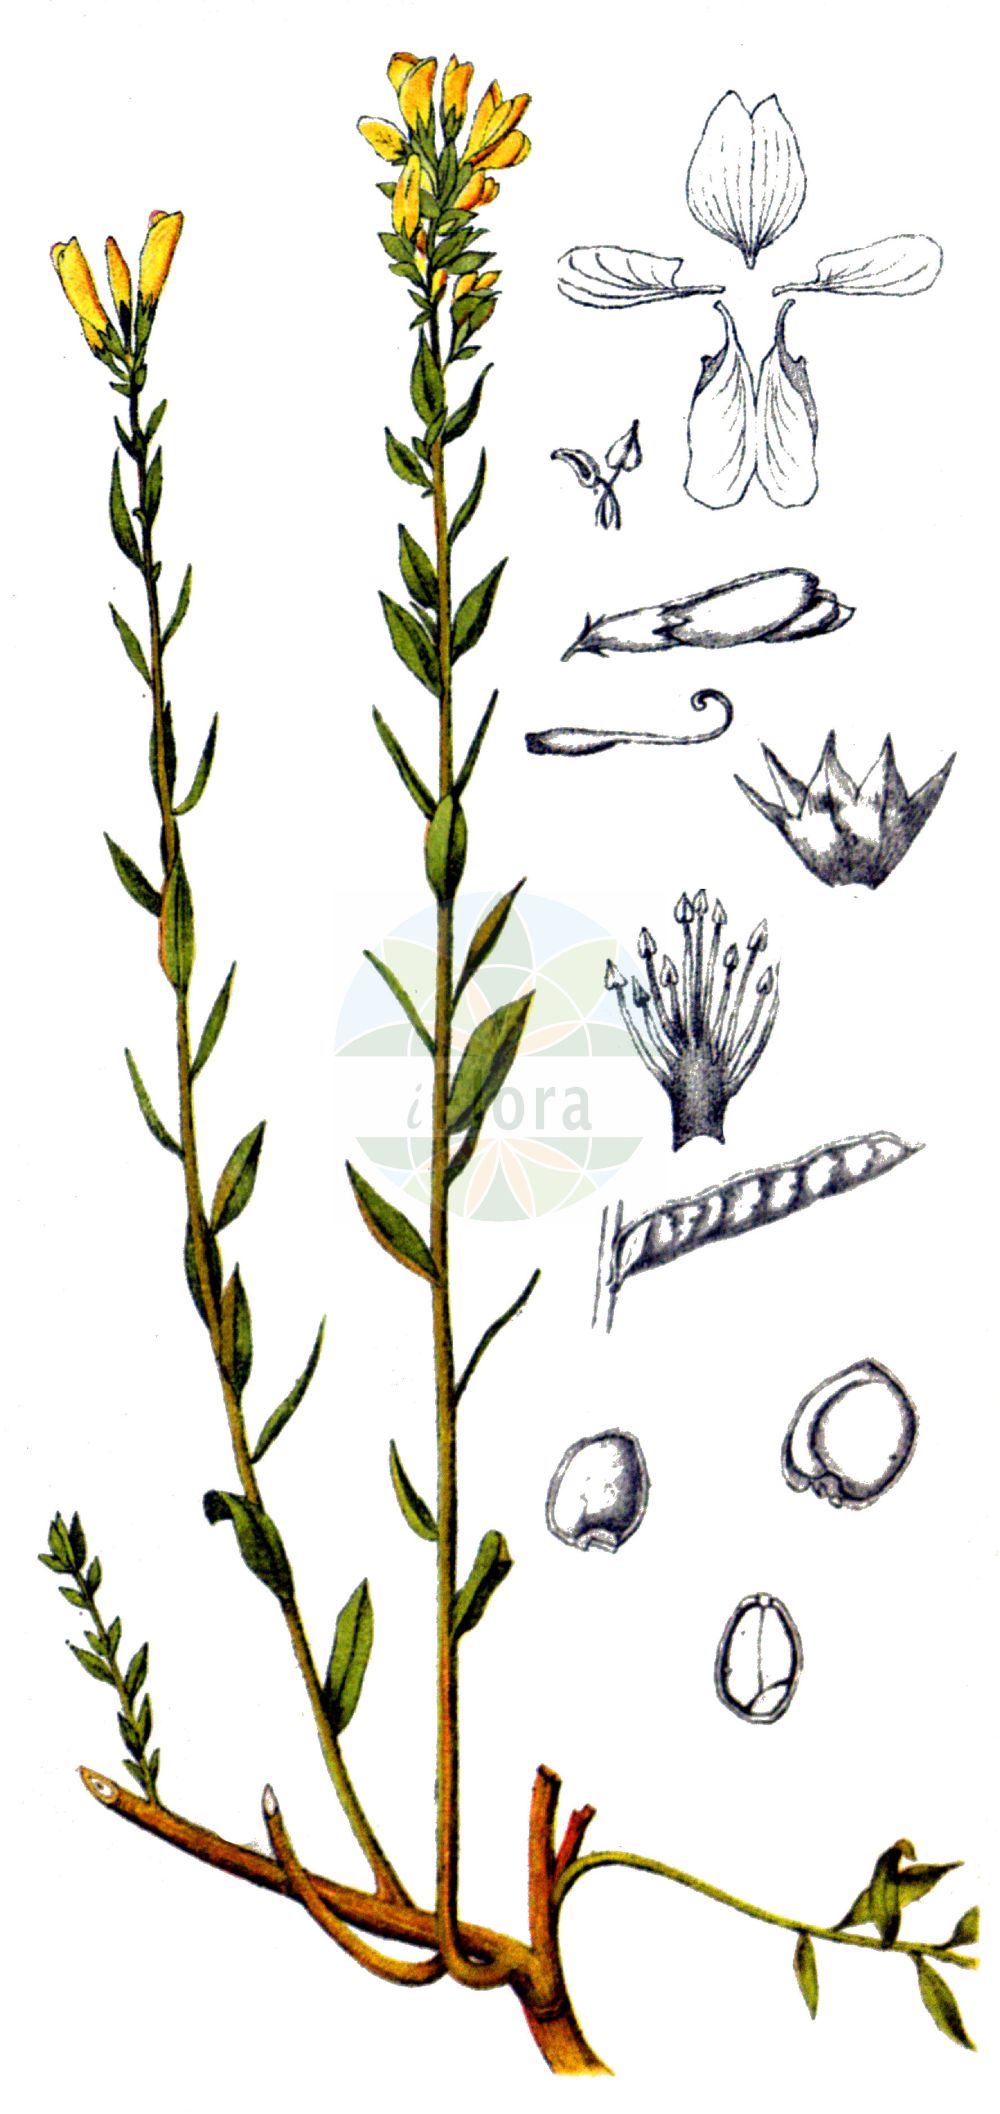 Historische Abbildung von Genista tinctoria (Färber-Ginster - Dyer's Greenweed). Das Bild zeigt Blatt, Bluete, Frucht und Same. ---- Historical Drawing of Genista tinctoria (Färber-Ginster - Dyer's Greenweed). The image is showing leaf, flower, fruit and seed.(Genista tinctoria,Färber-Ginster,Dyer's Greenweed,Cytisus tinctoria,Genista alpestris,Genista anxantica,Genista borysthenica,Genista campestris,Genista donetzica,Genista elata,Genista elatior,Genista humilis,Genista hungarica,Genista lasiocarpa,Genista mantica,Genista marginata,Genista mayeri,Genista oligosperma,Genista ovata,Genista patula,Genista perreymondii,Genista ptilophylla,Genista pubescens,Genista rupestris,Genista sibirica,Genista tanaitica,Genista tenuifolia,Genista tinctoria,Genista virgata,Genistoides elata,Genistoides tinctoria,Faerber-Ginster,Kuesten-Faerberginster,Dyer's Greenweed,Dyer's Broom,Dyer's Greenwood,Woad-waxen,Genista,Ginster,Broom,Fabaceae,Schmetterlingsblütler,Pea family,Blatt,Bluete,Frucht,Same,leaf,flower,fruit,seed,Millspaugh (1892))